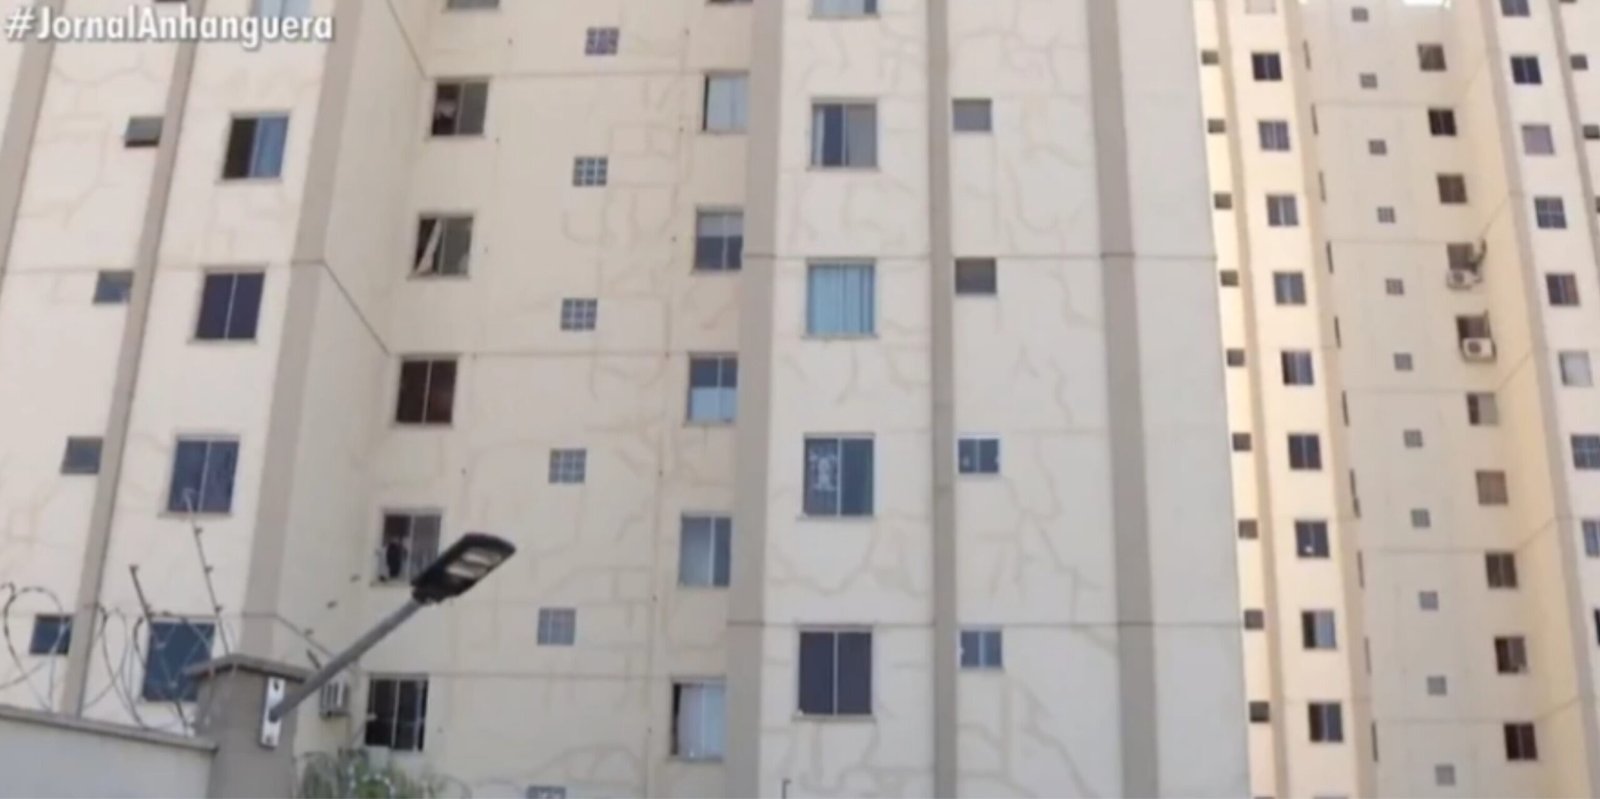 Tragédia: Menino morre após cair da janela de apartamento